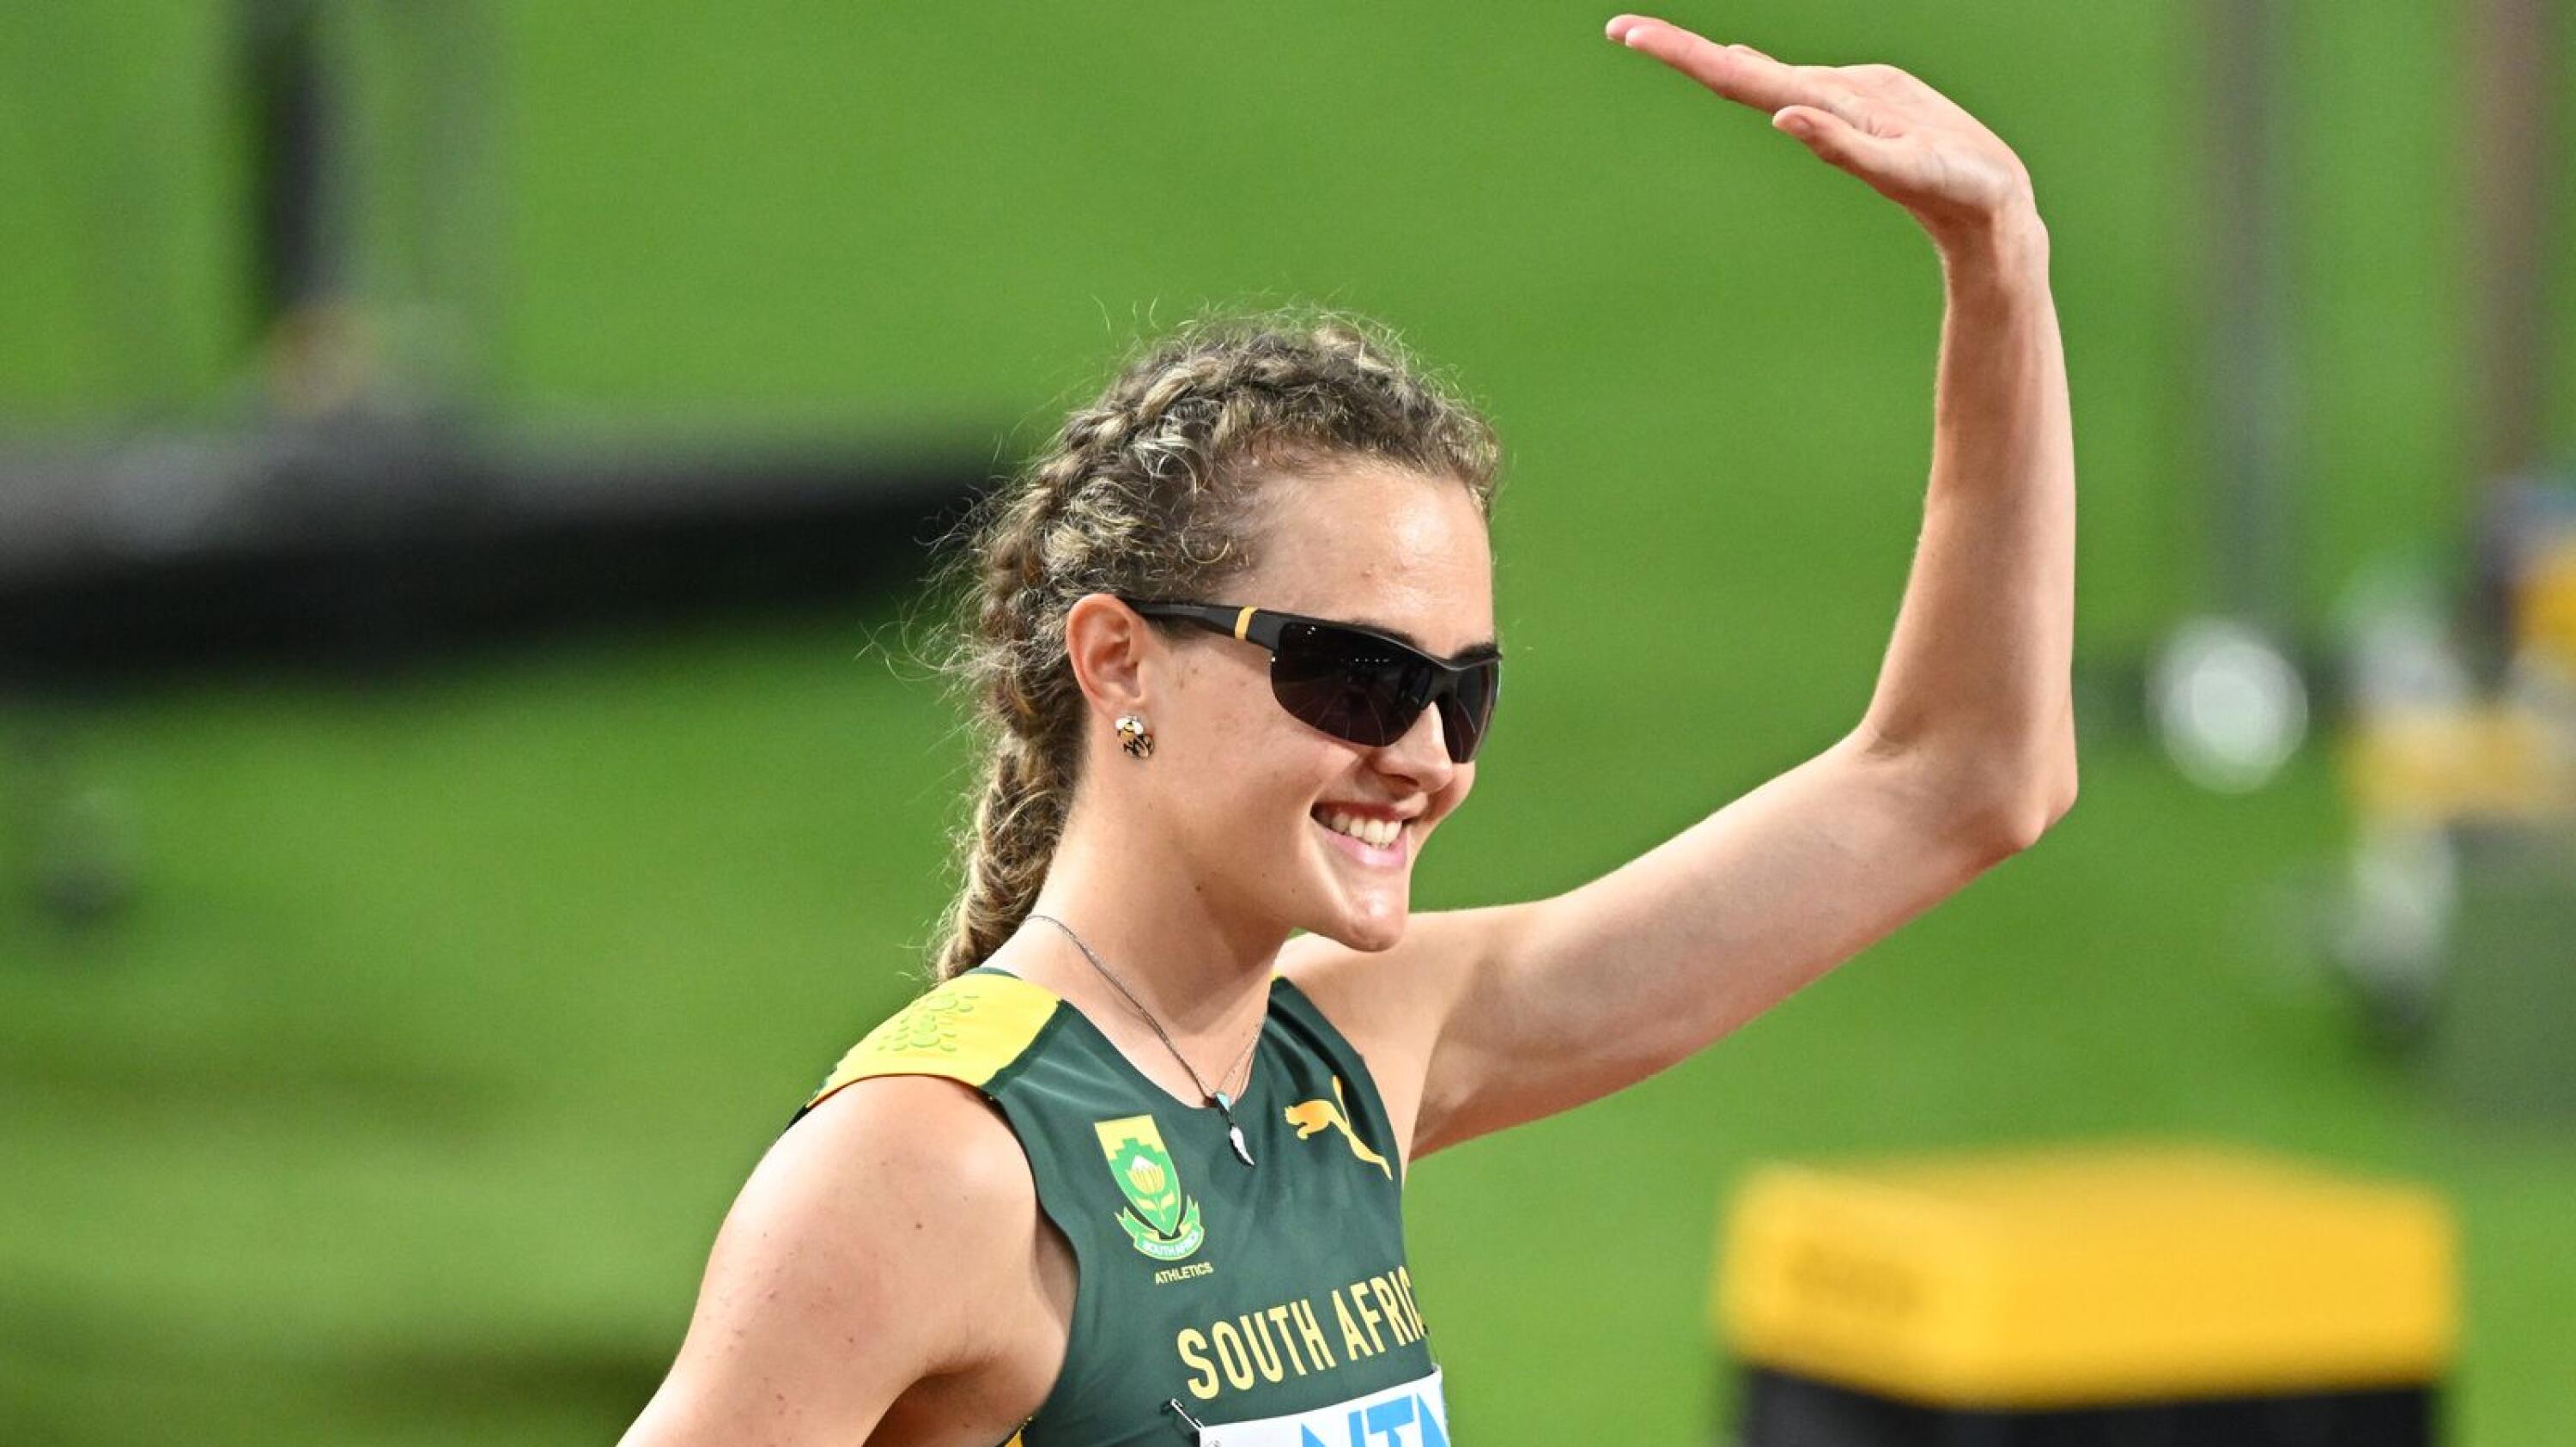 South Africa's Zeney Van Der Walt gestures before the women's 400m semi-final